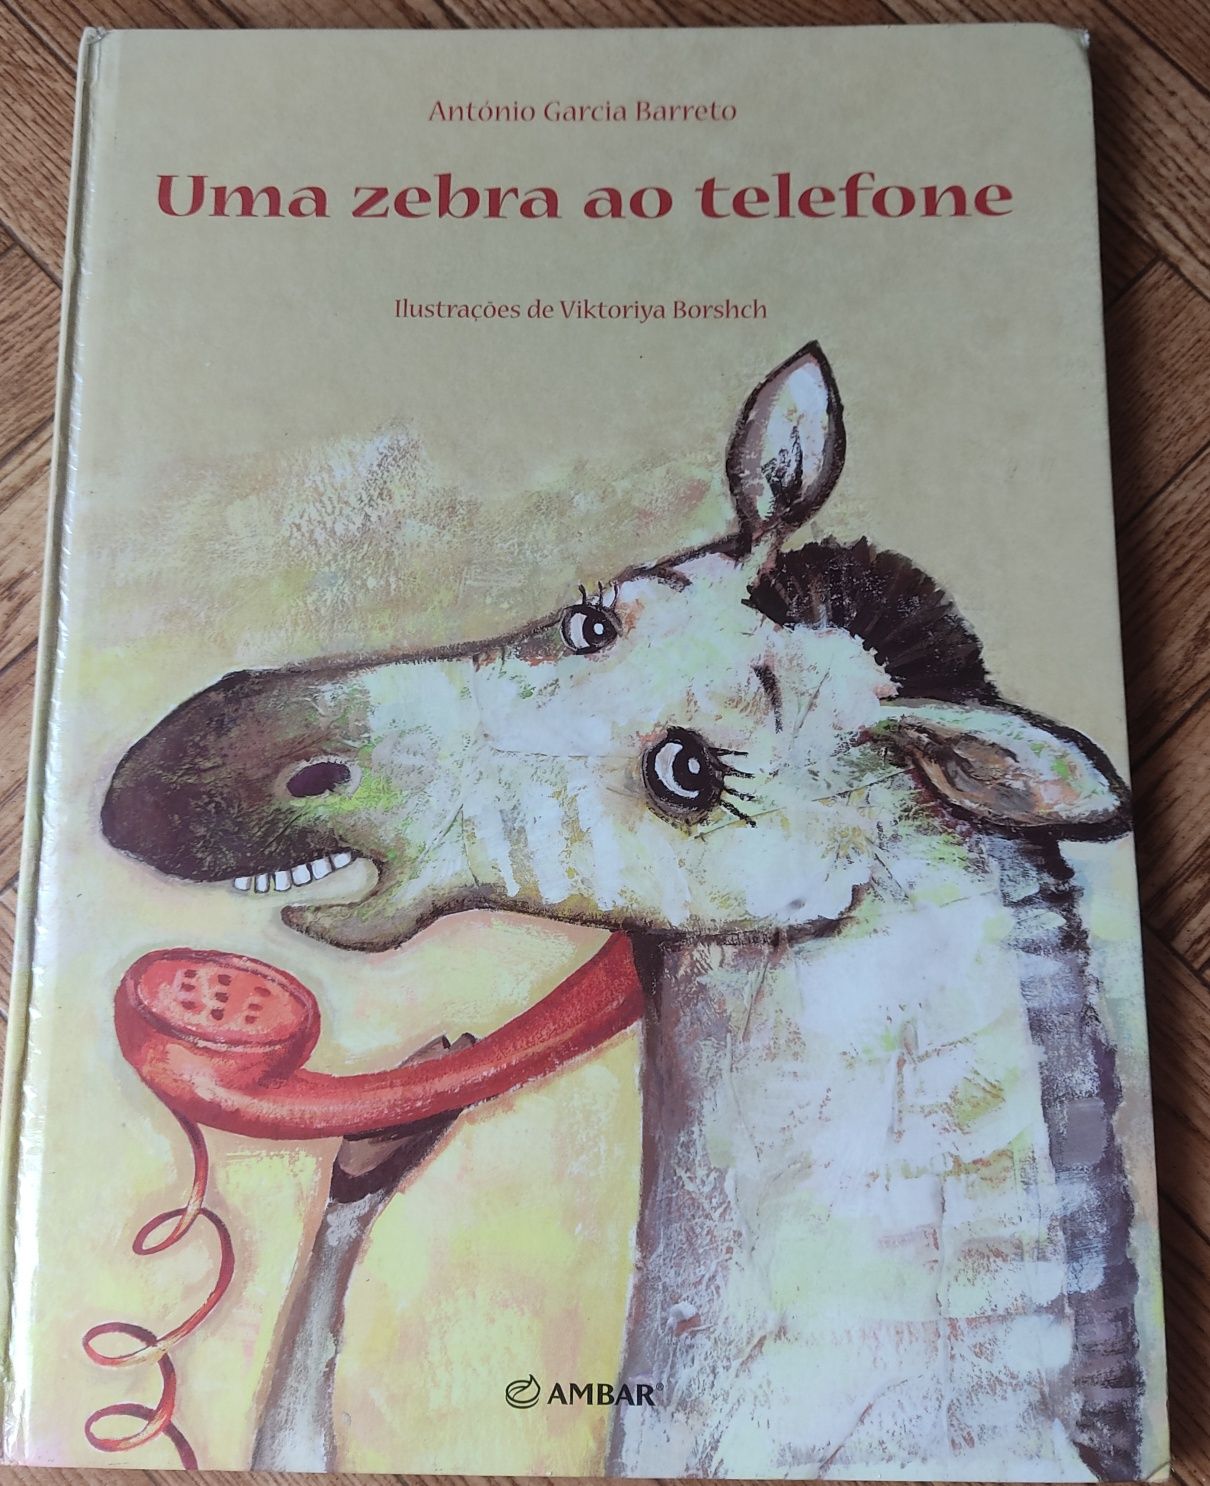 Livro " Uma zebra ao telefone" de António Garcia Barreto